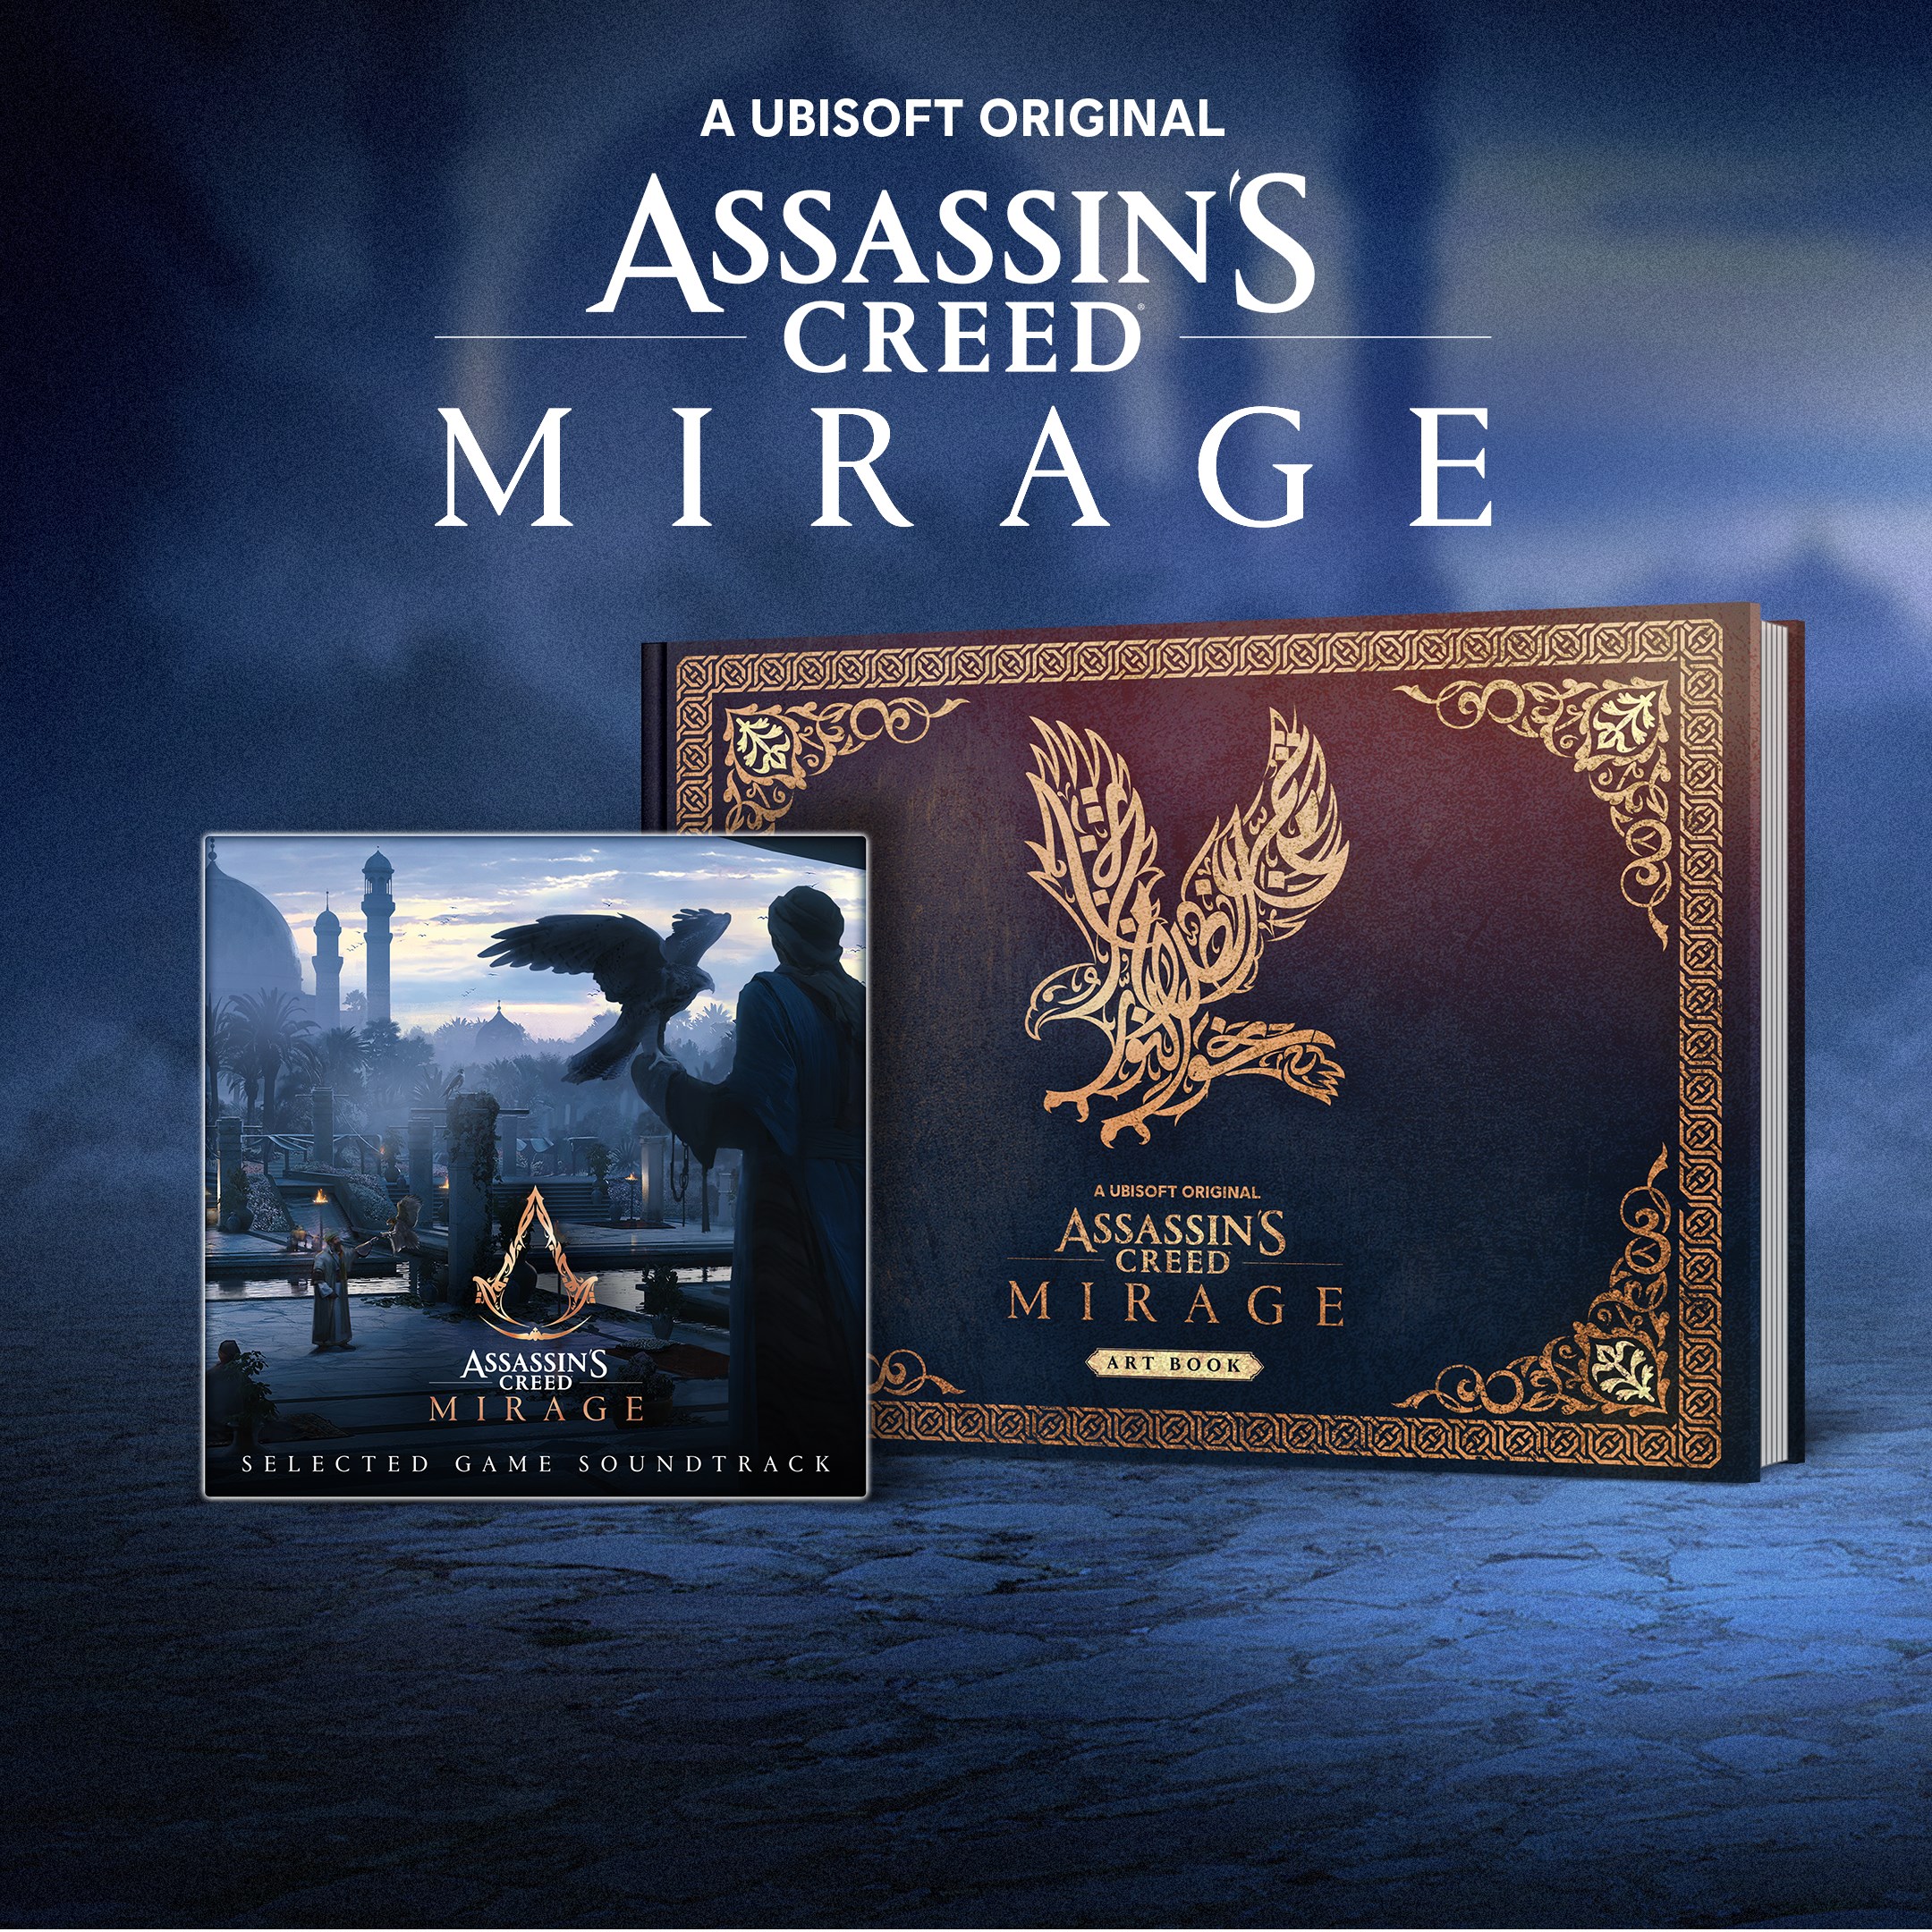 El arte del libro de ilustraciones digital y banda sonora de Assassin's Creed® Mirage